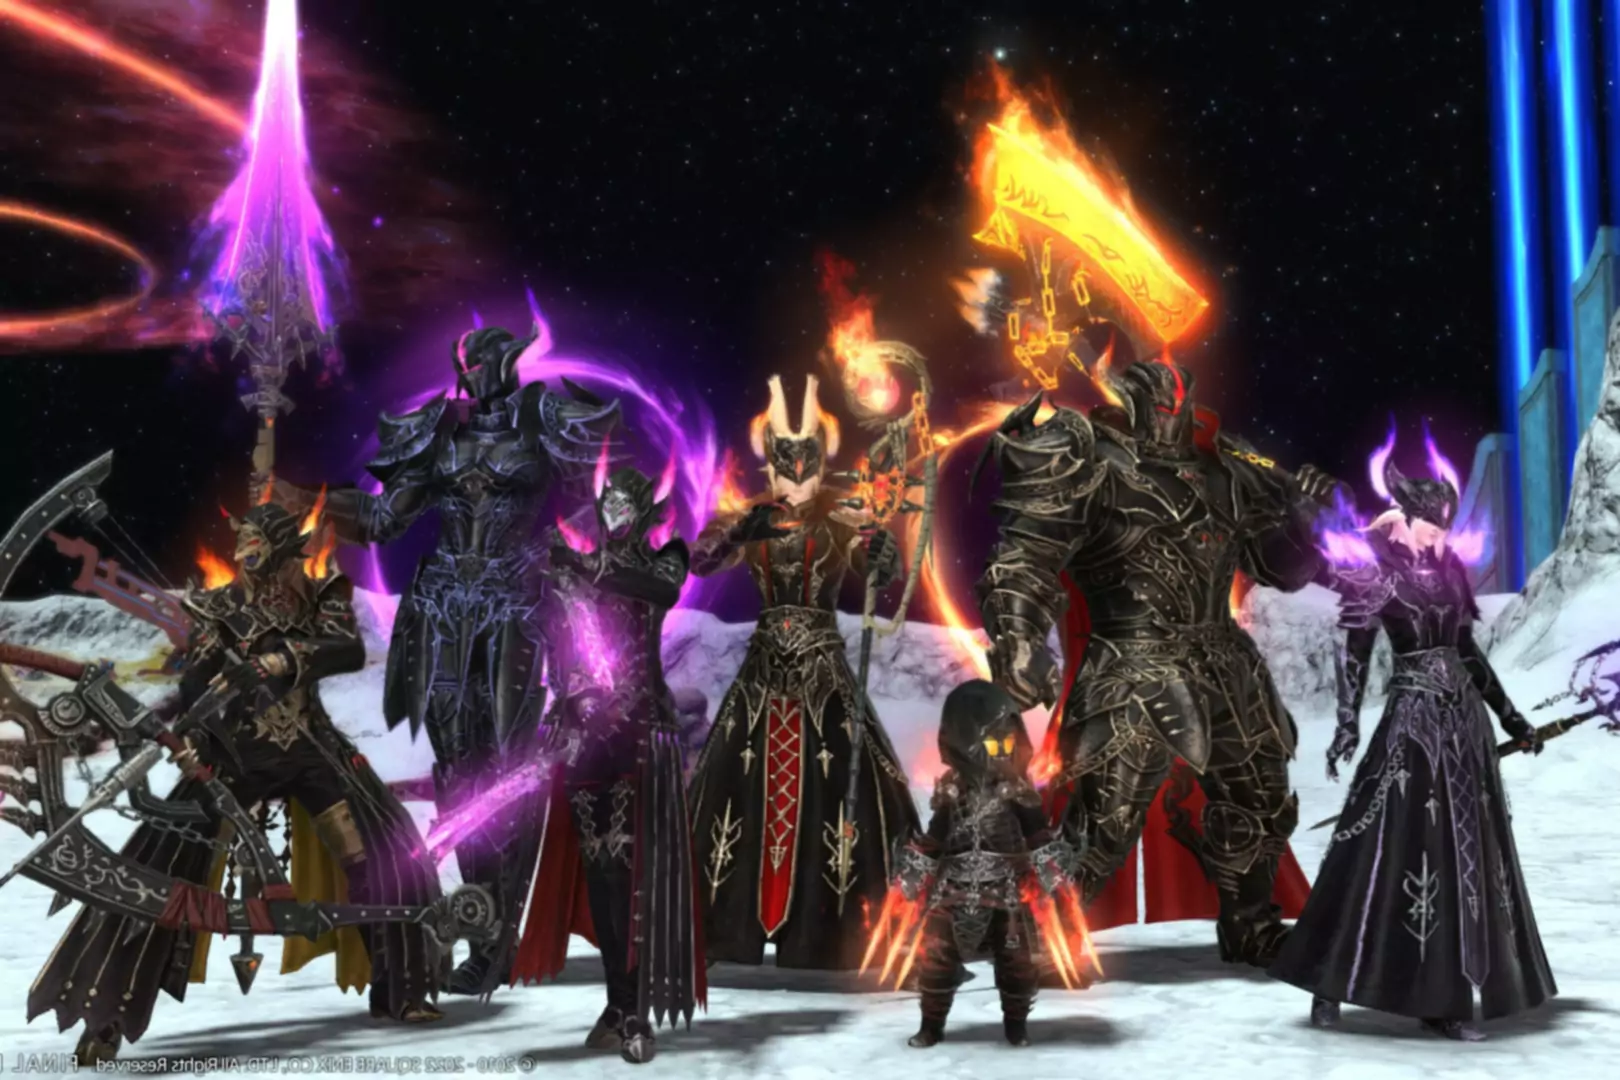 Capture d'écran de Final Fantasy XIV Endwalker montrant des personnages avec des armes et des armures élaborées se tenant ensemble.